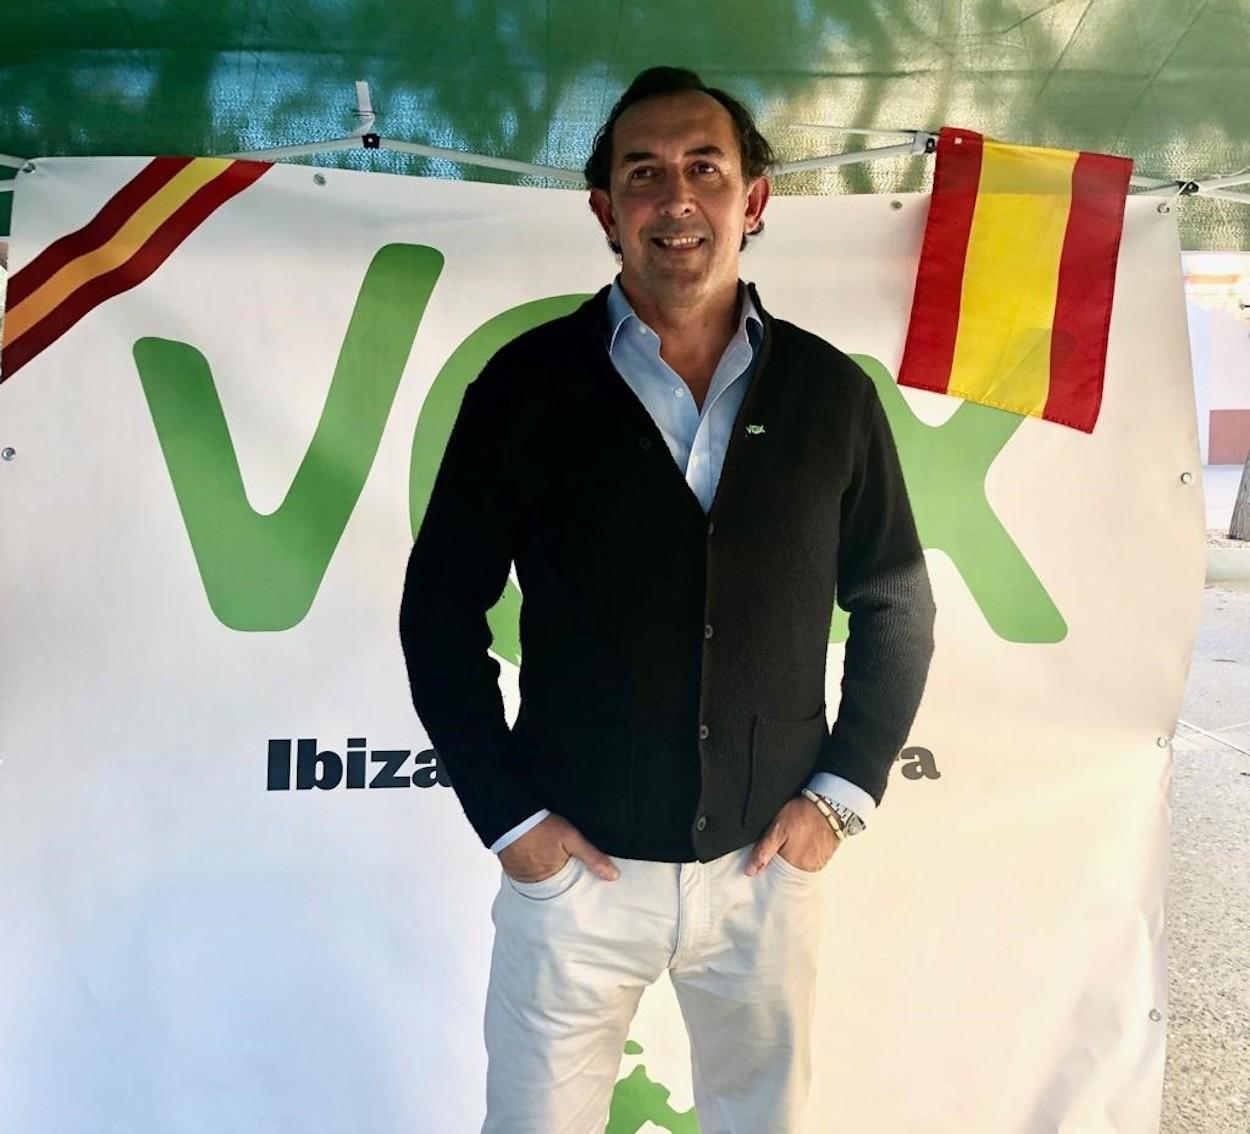 El excandidato de Vox al Senado por Ibiza y Formentera, José Luis Sánchez Saliquet.